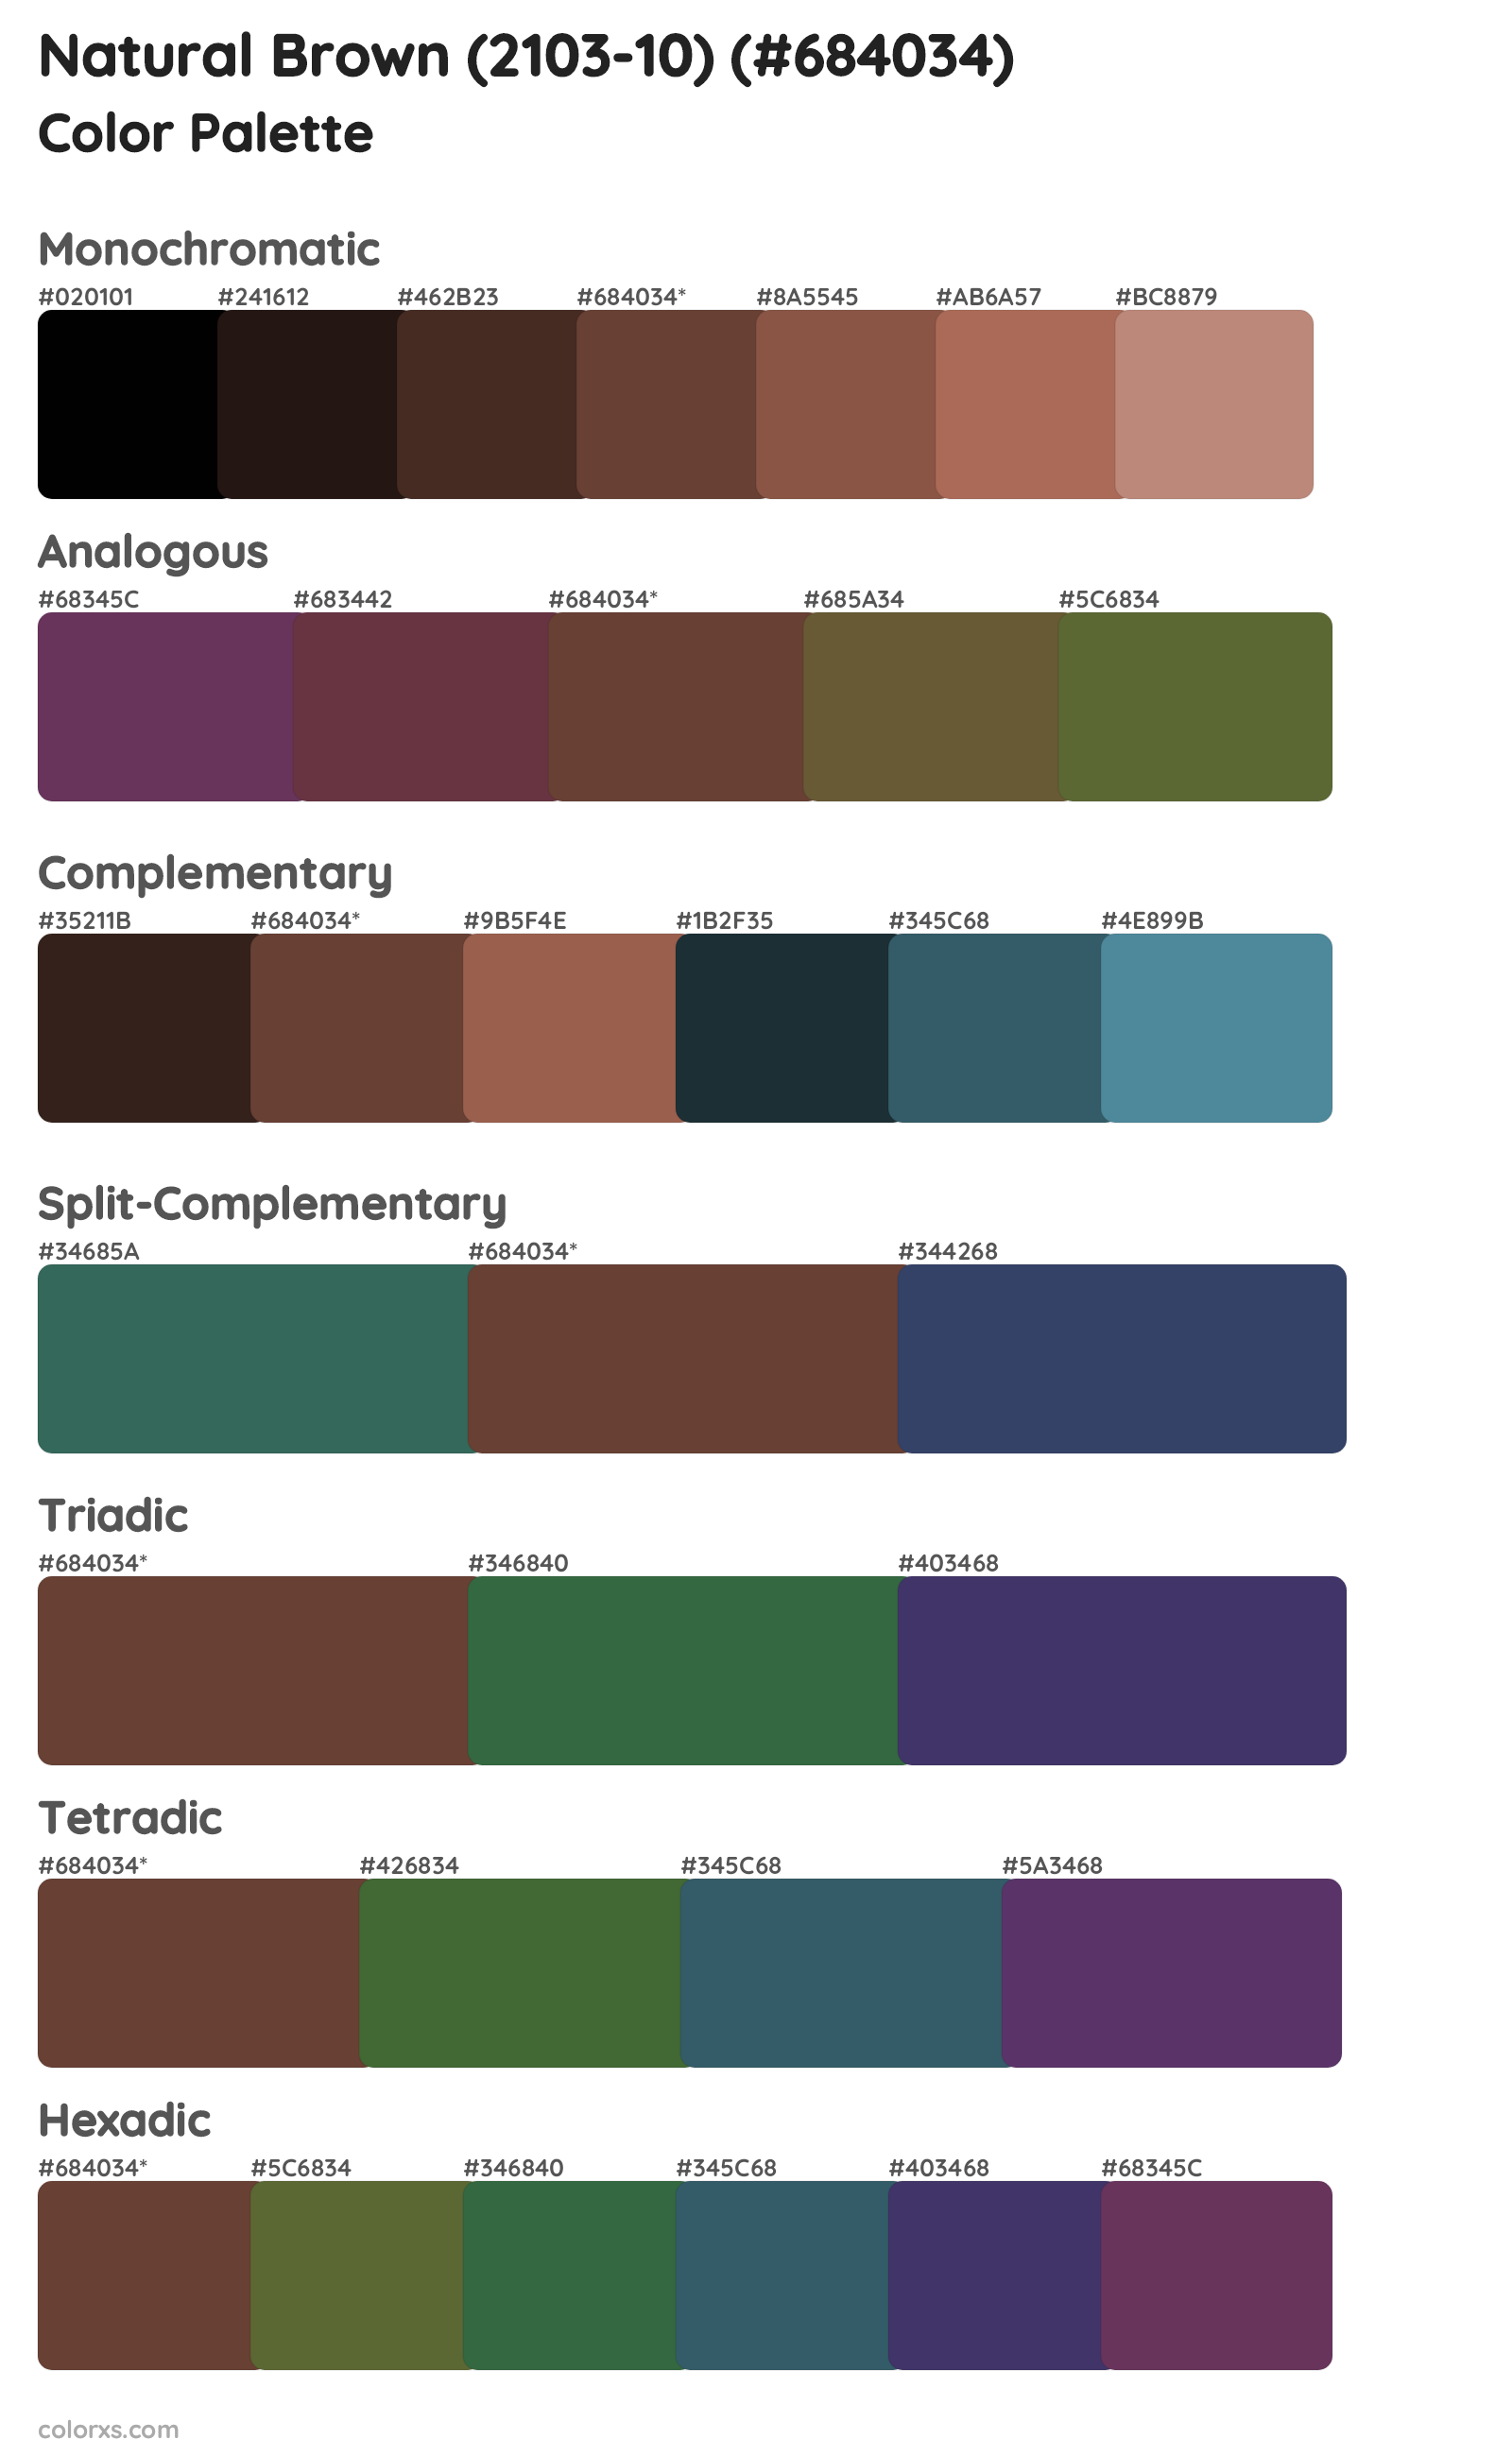 Natural Brown (2103-10) Color Scheme Palettes